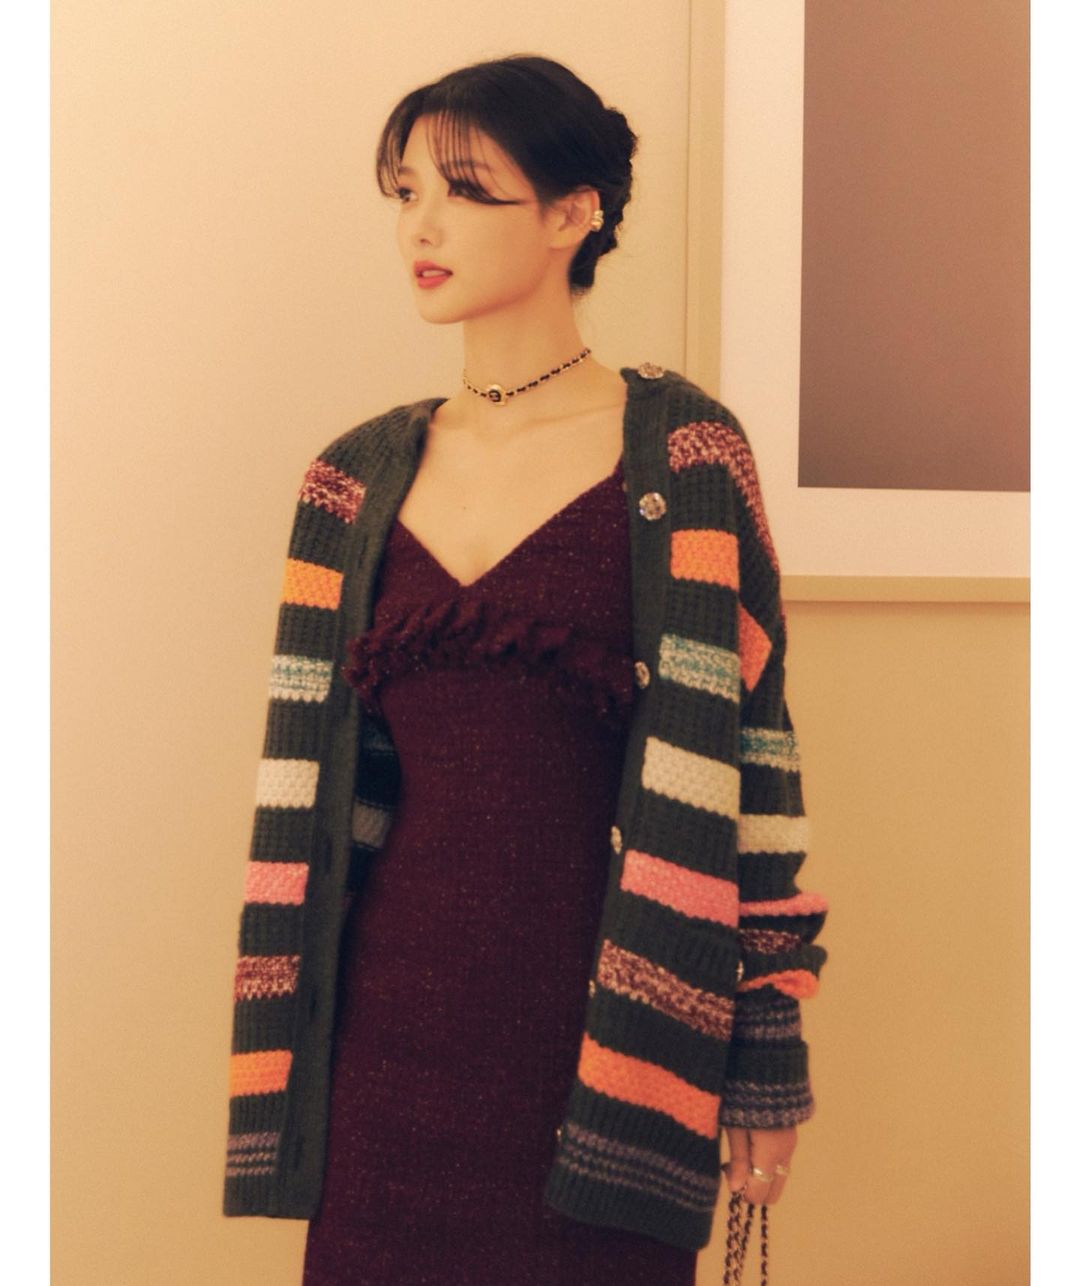 Tham gia sự kiện của Chanel, Kim Yoo Jung diện thiết kế váy hai dây, khoác ngoài cardigan len và đeo choker làm điểm nhấn.